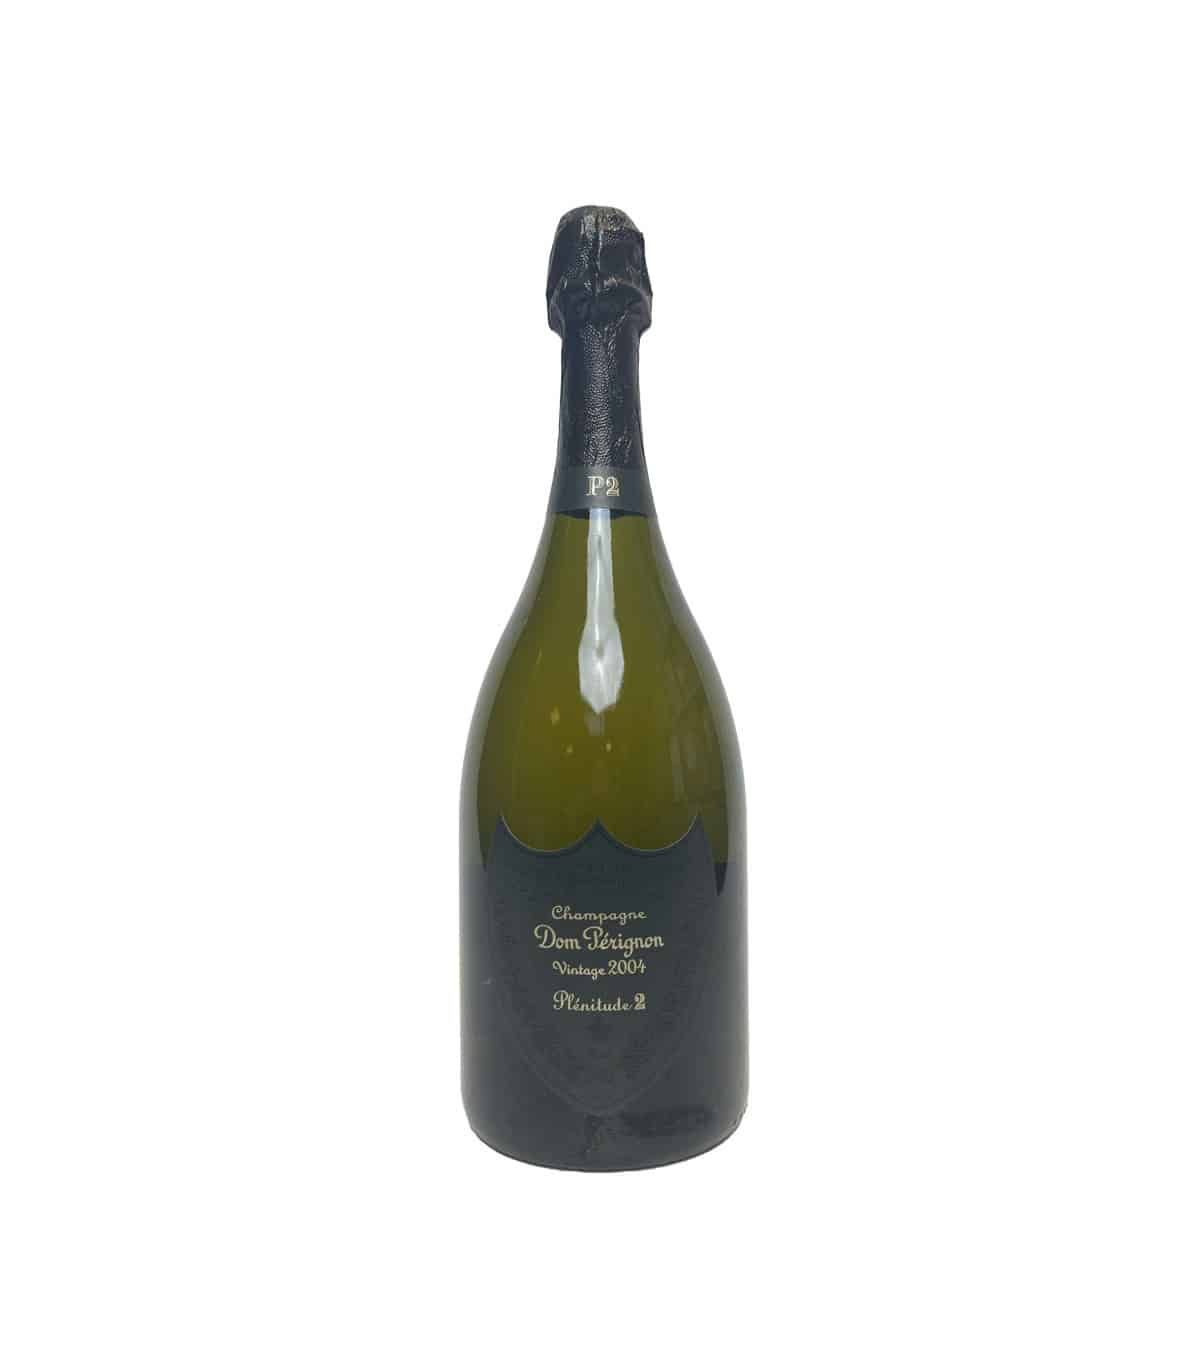 Champagne Dom Perignon P2 2004